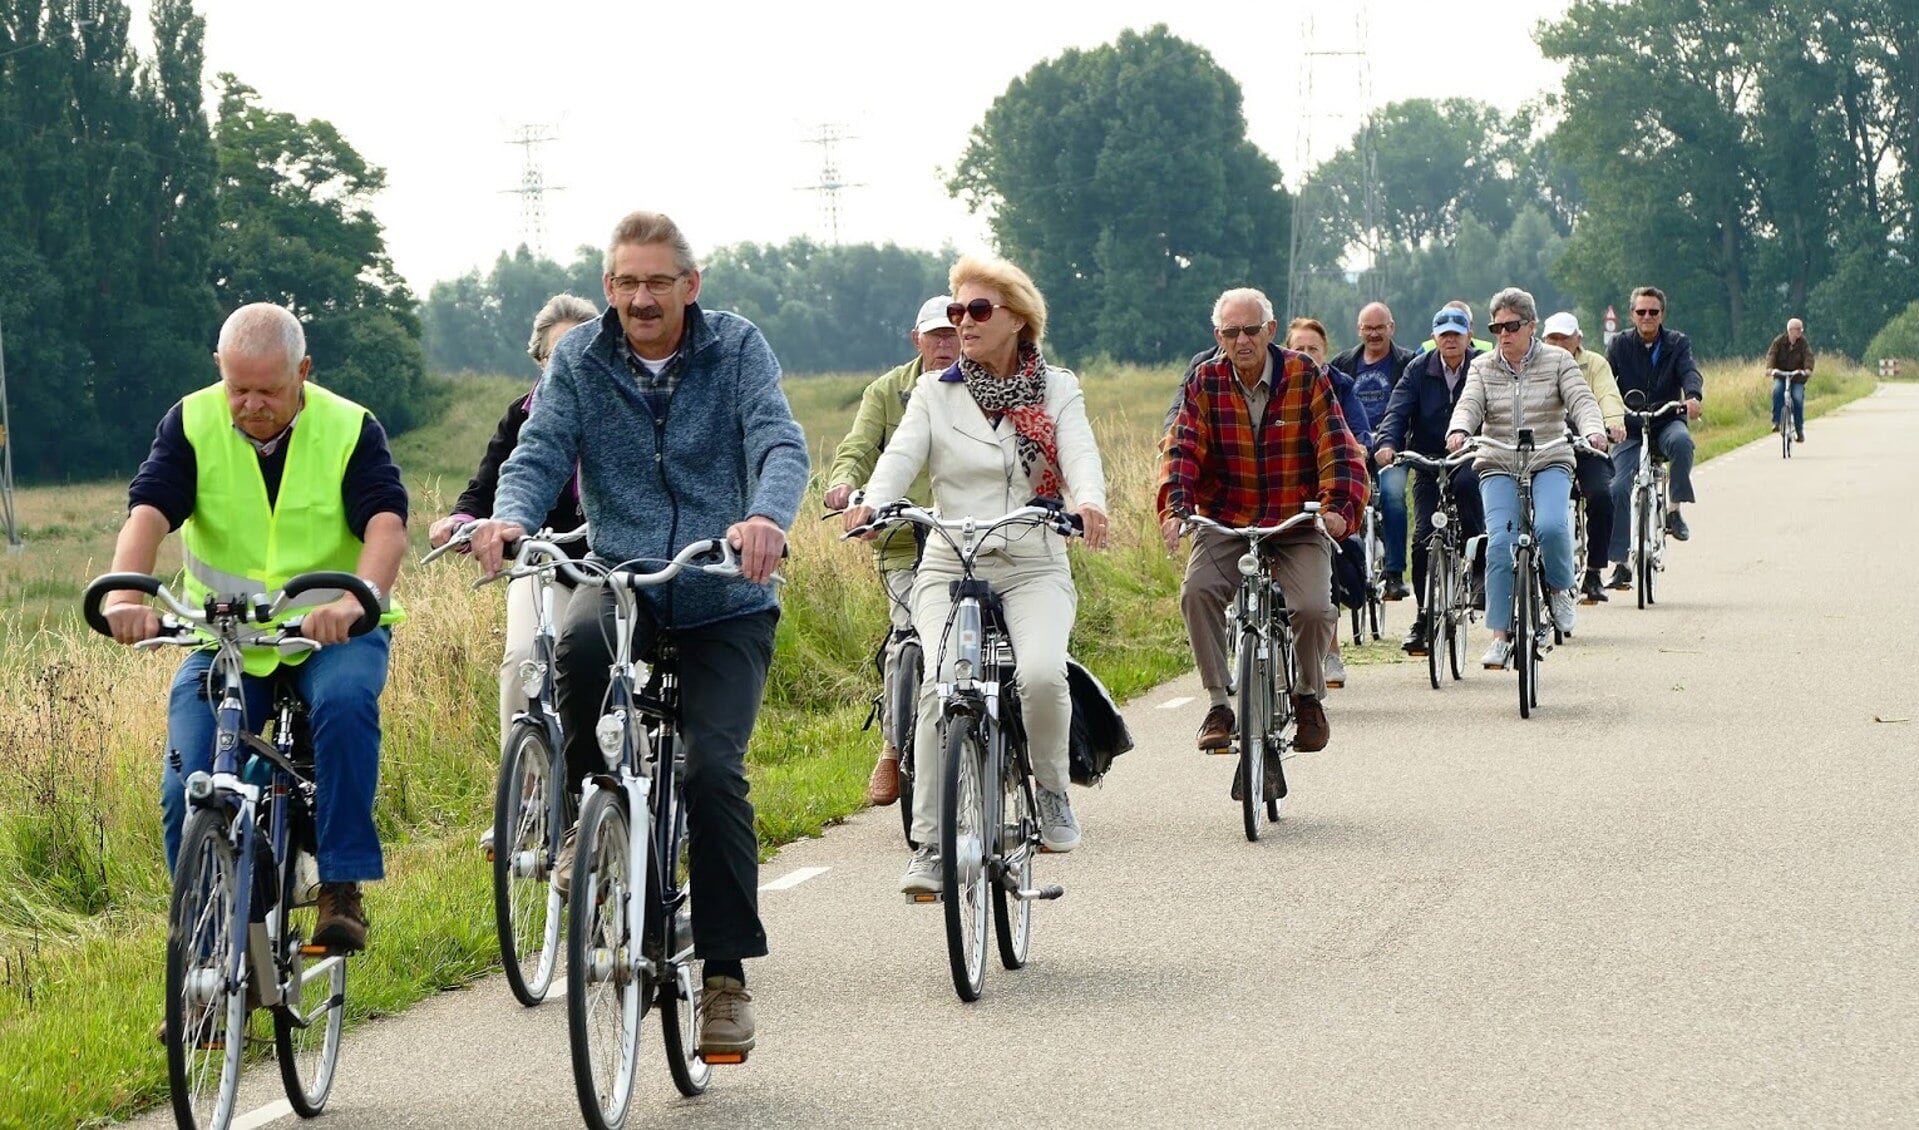 Uitstapje met de fiets van  seniorenvereniging Weurt.